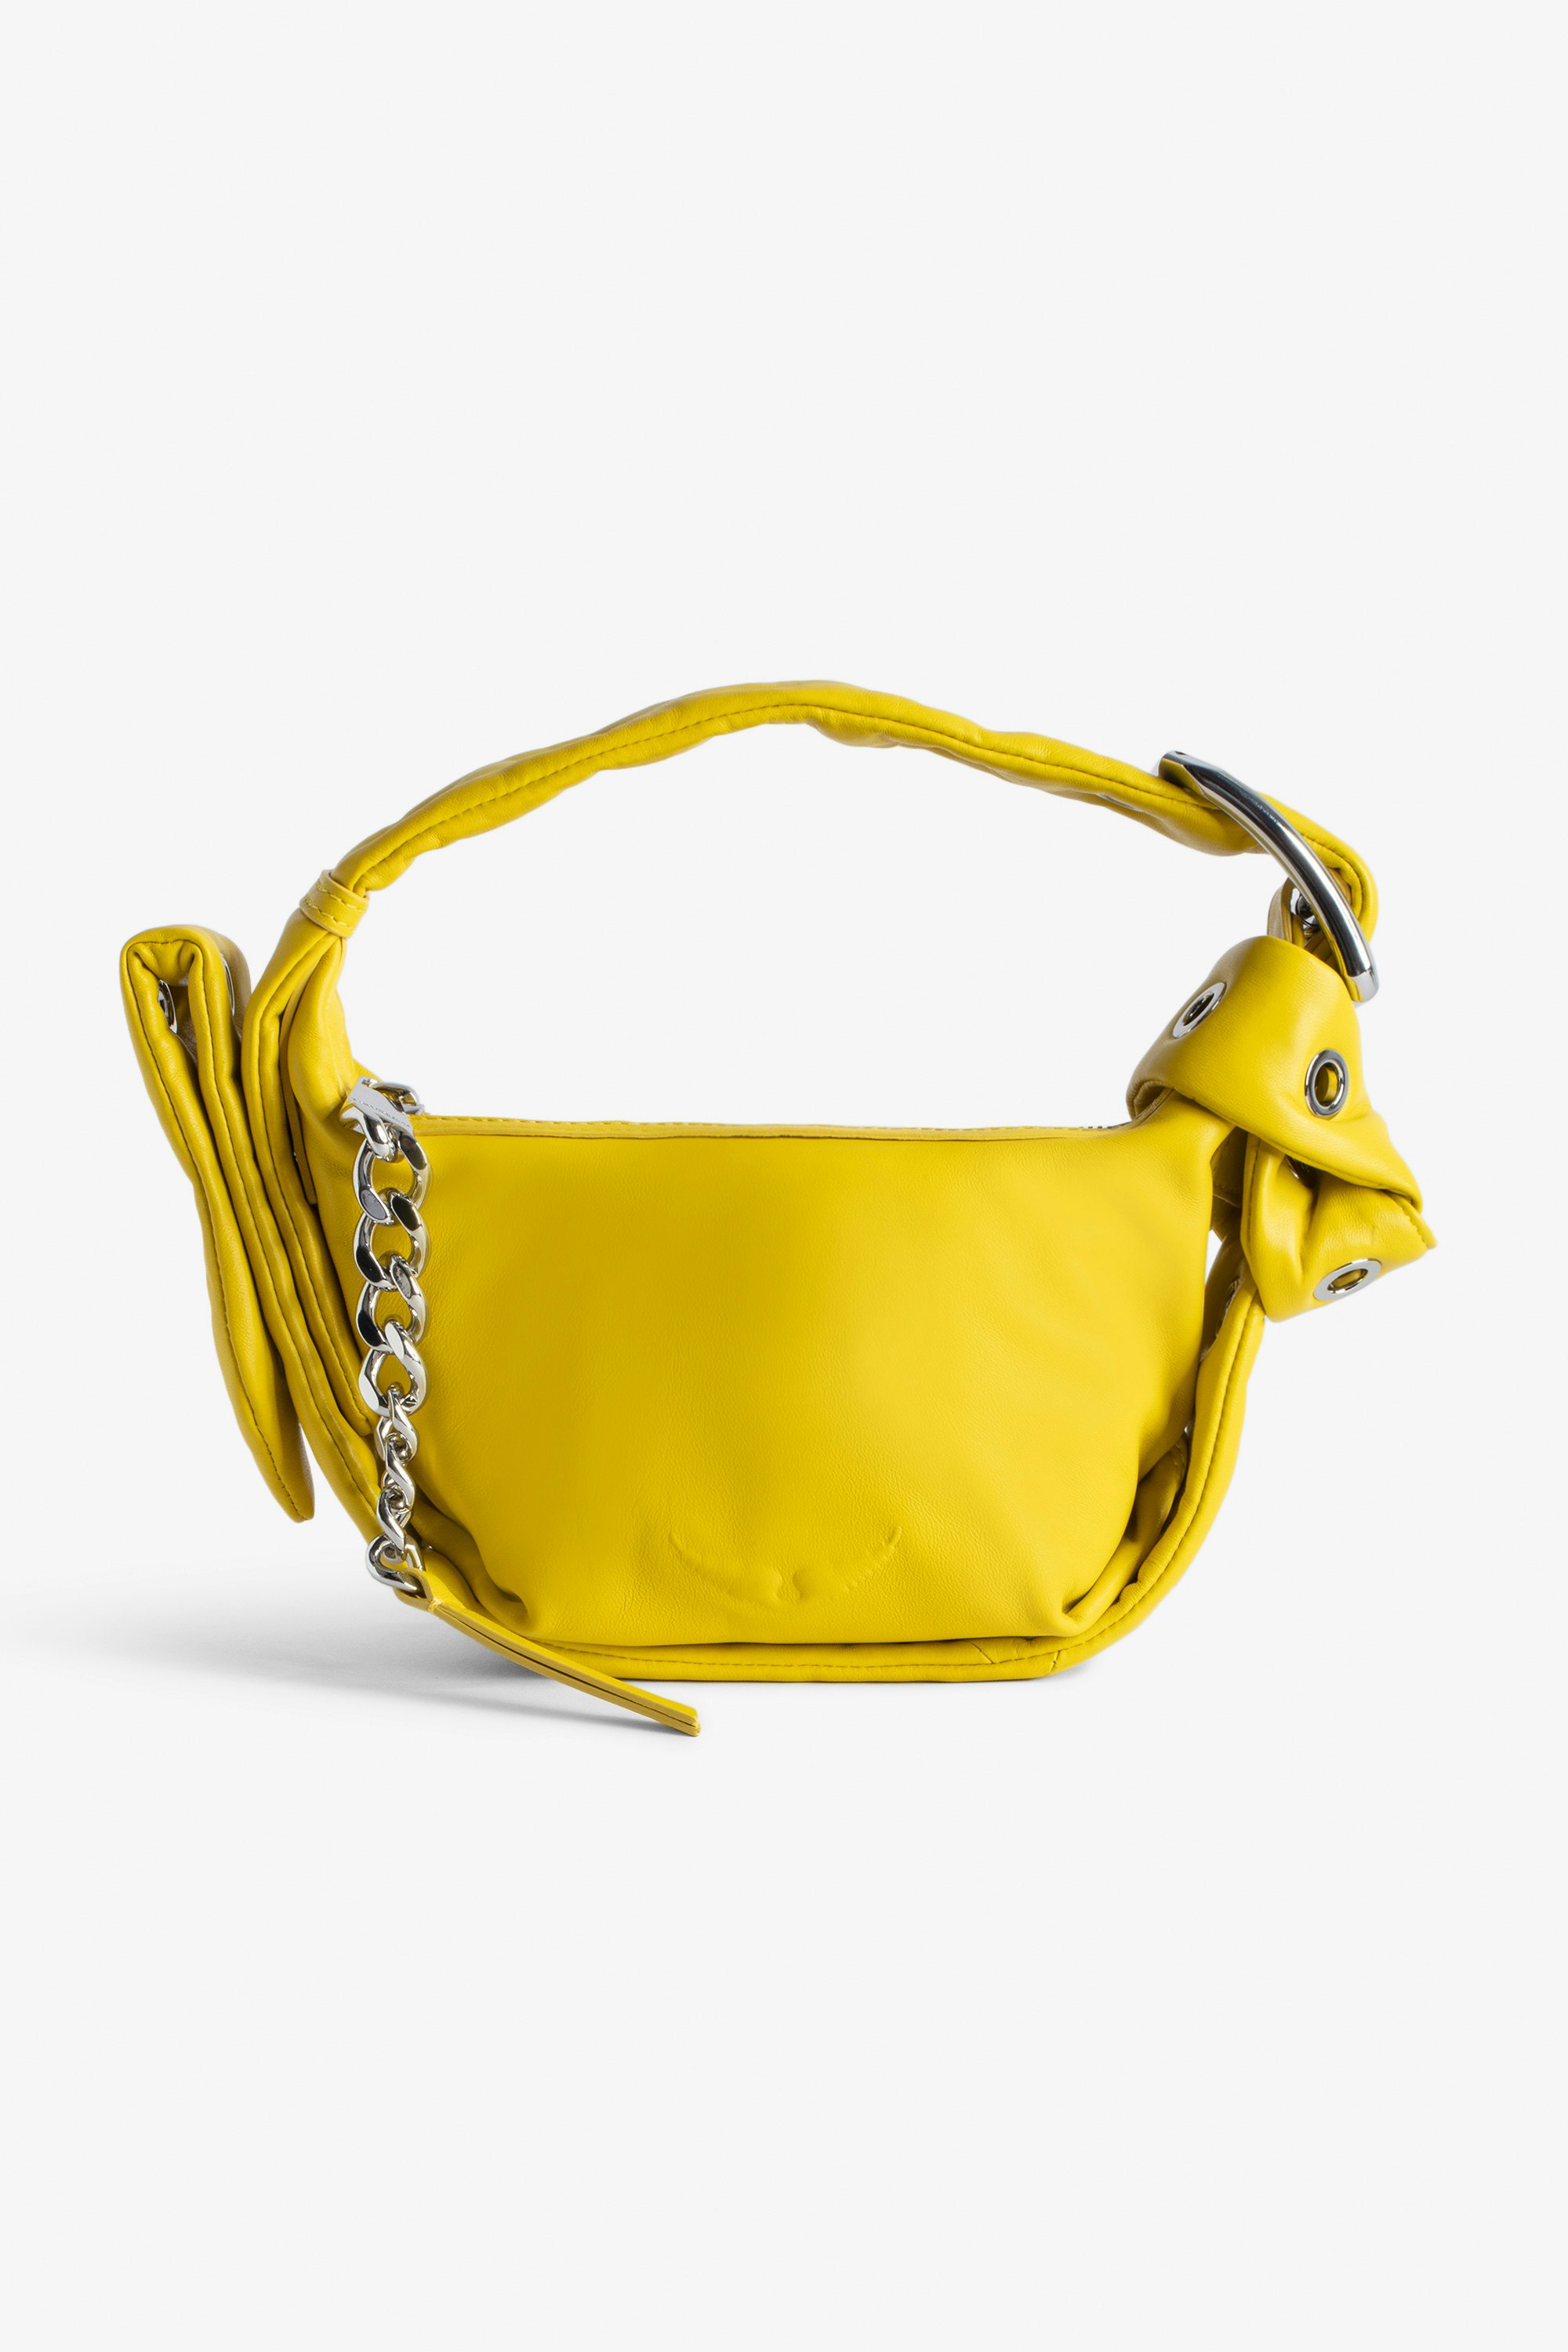 Borsa Le Cecilia XS Obsession - Piccola borsa in pelle liscia gialla con tracolla e fibbia in metallo a C da donna.